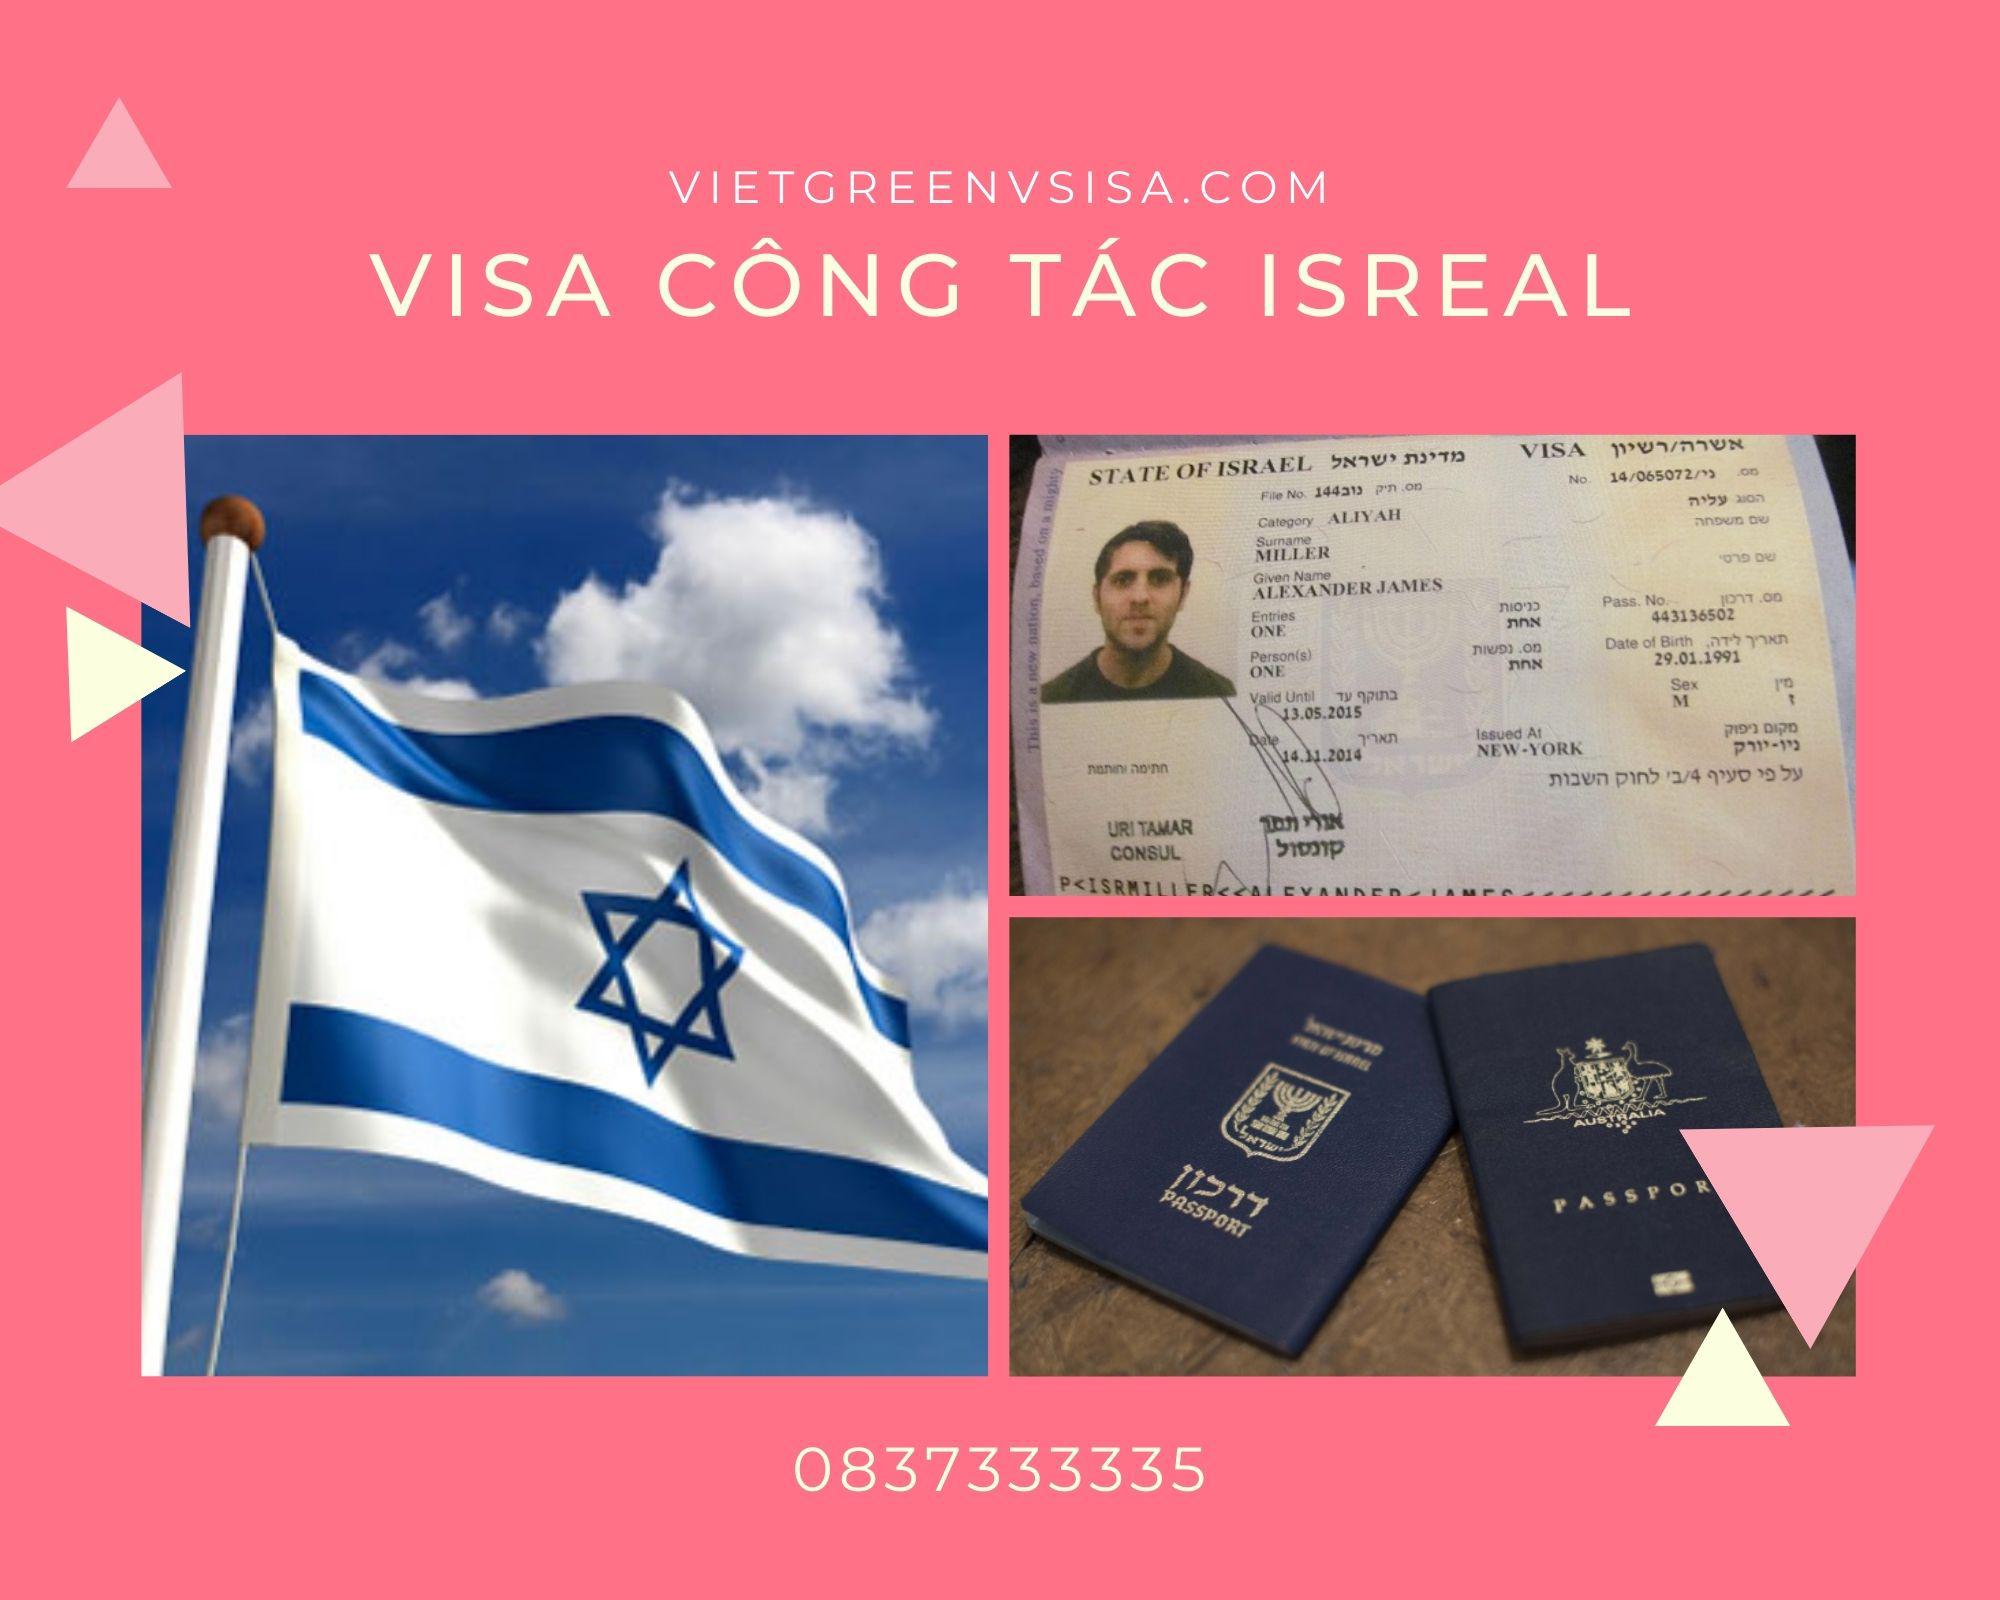 Dịch vụ visa Israel công tác cùng Vietgreenvisa